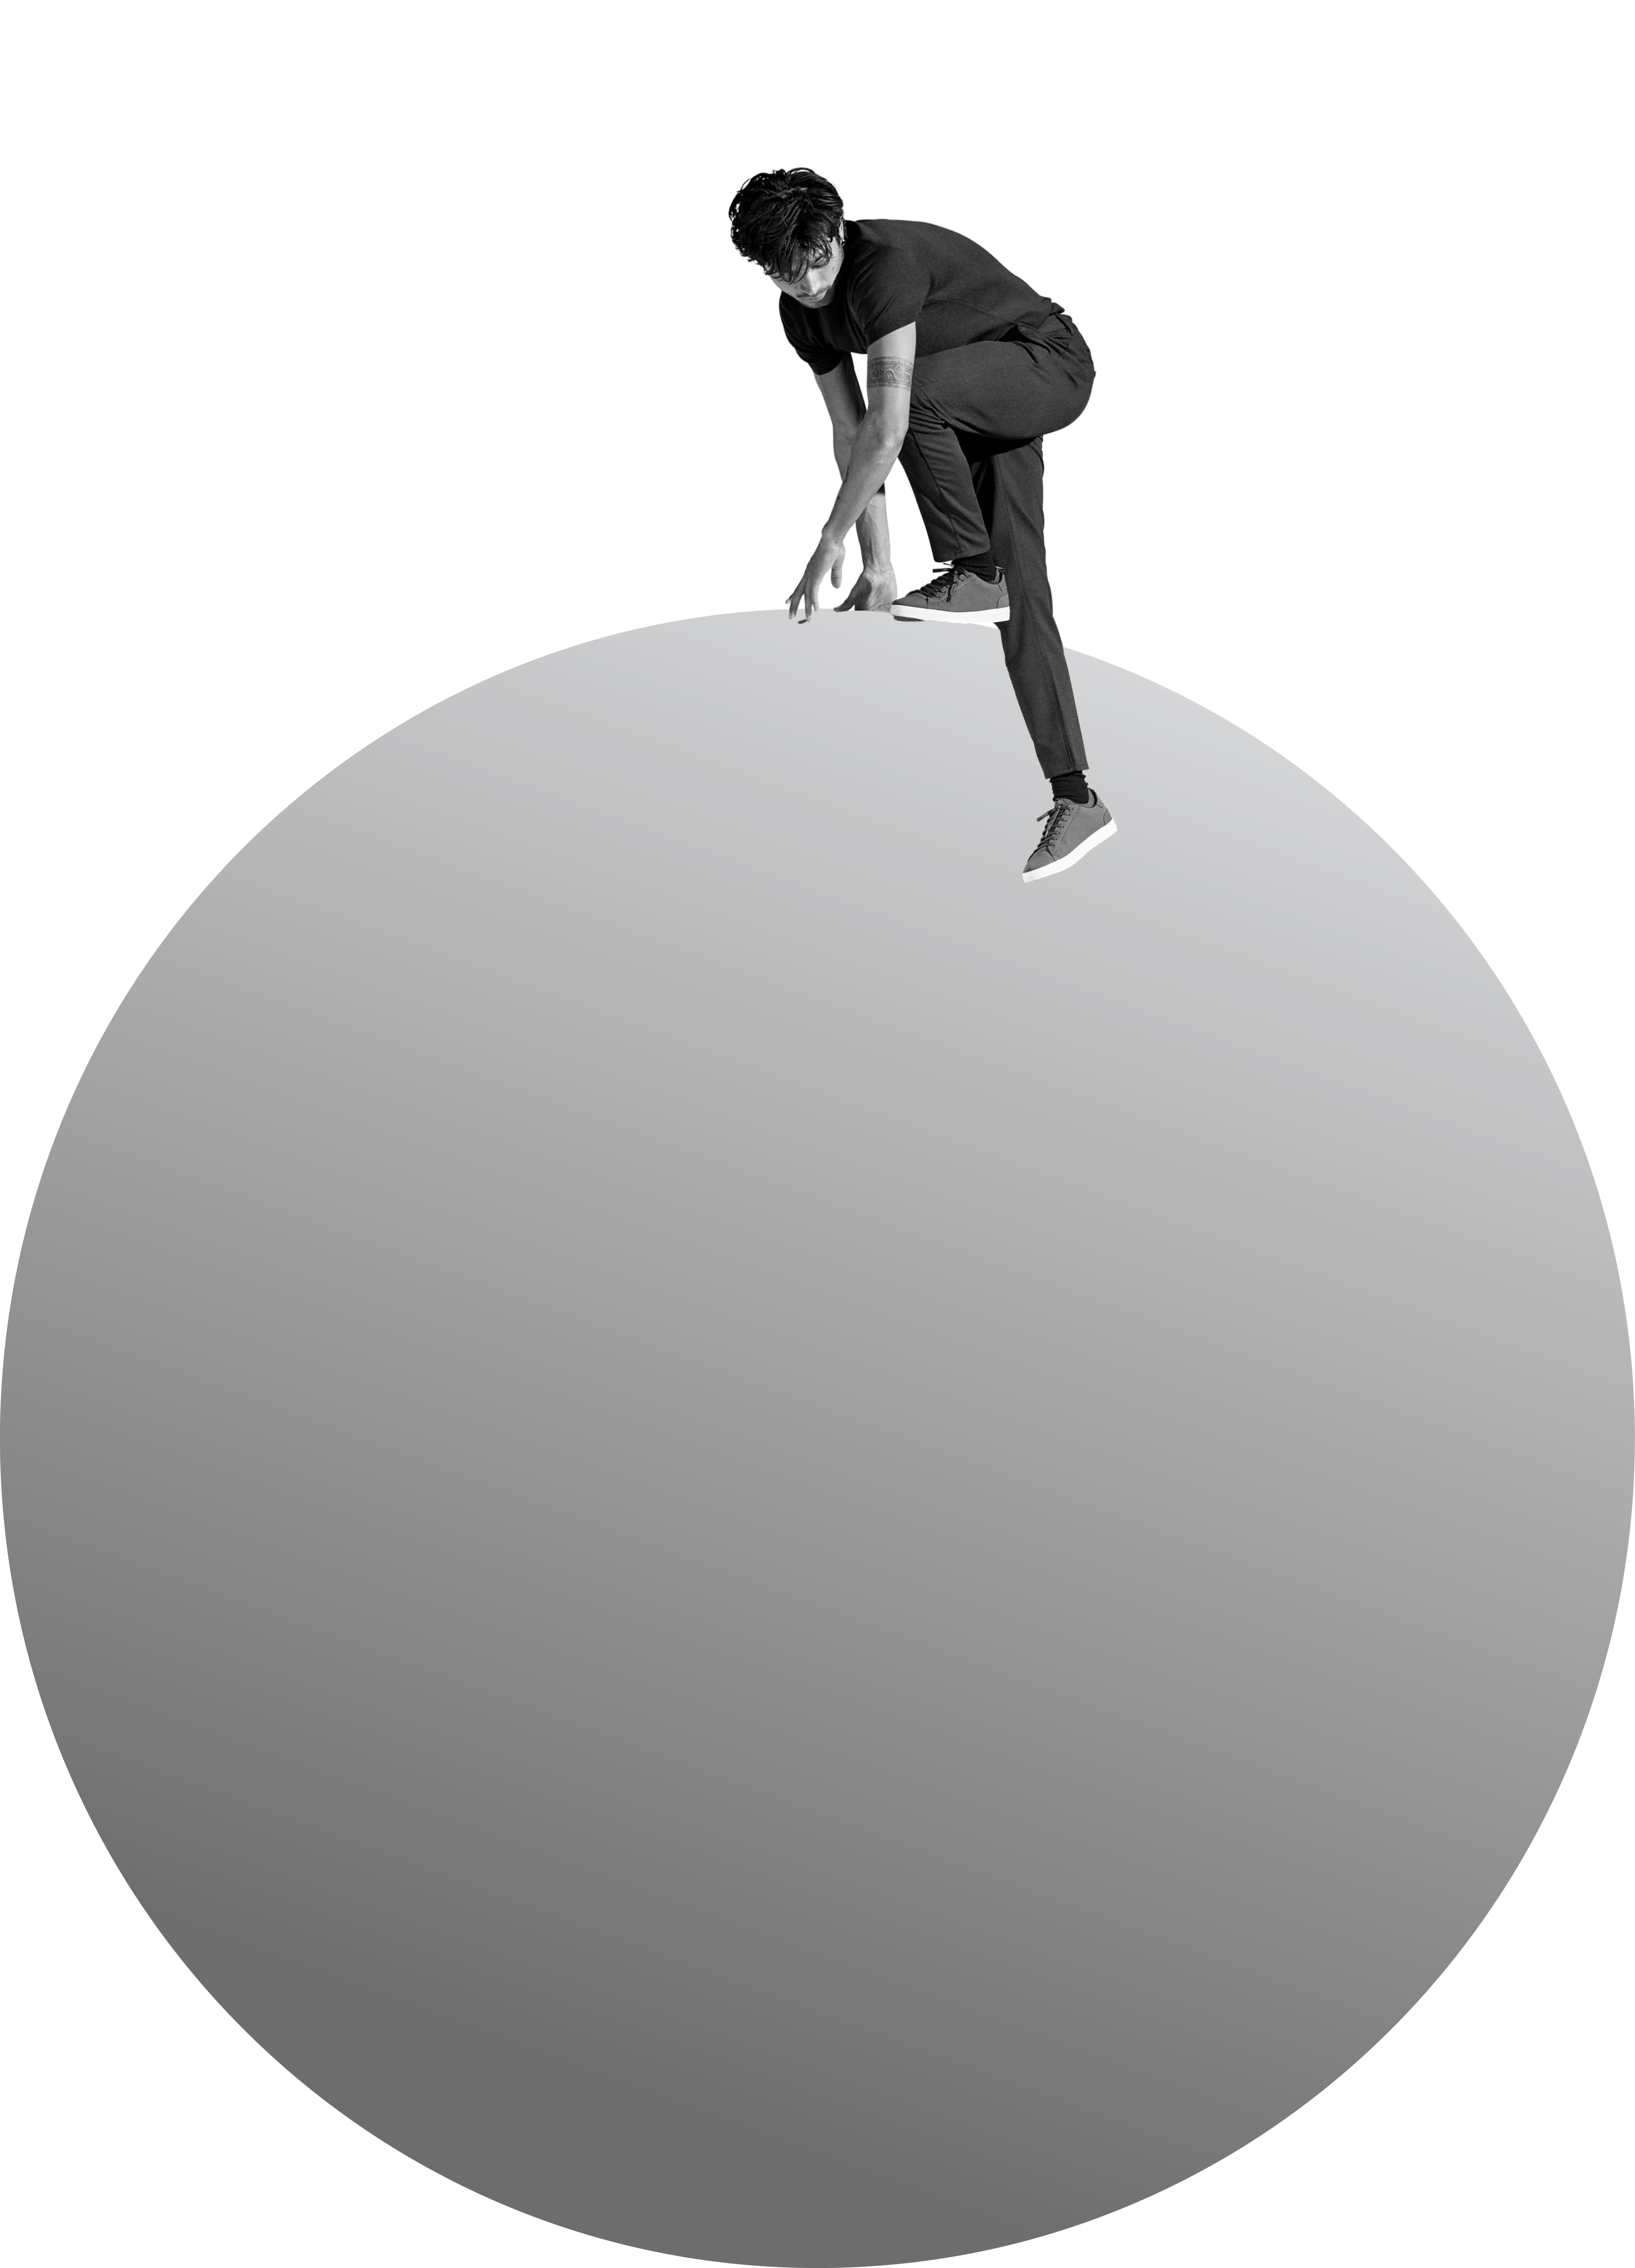 Person climbing over a gray bubble